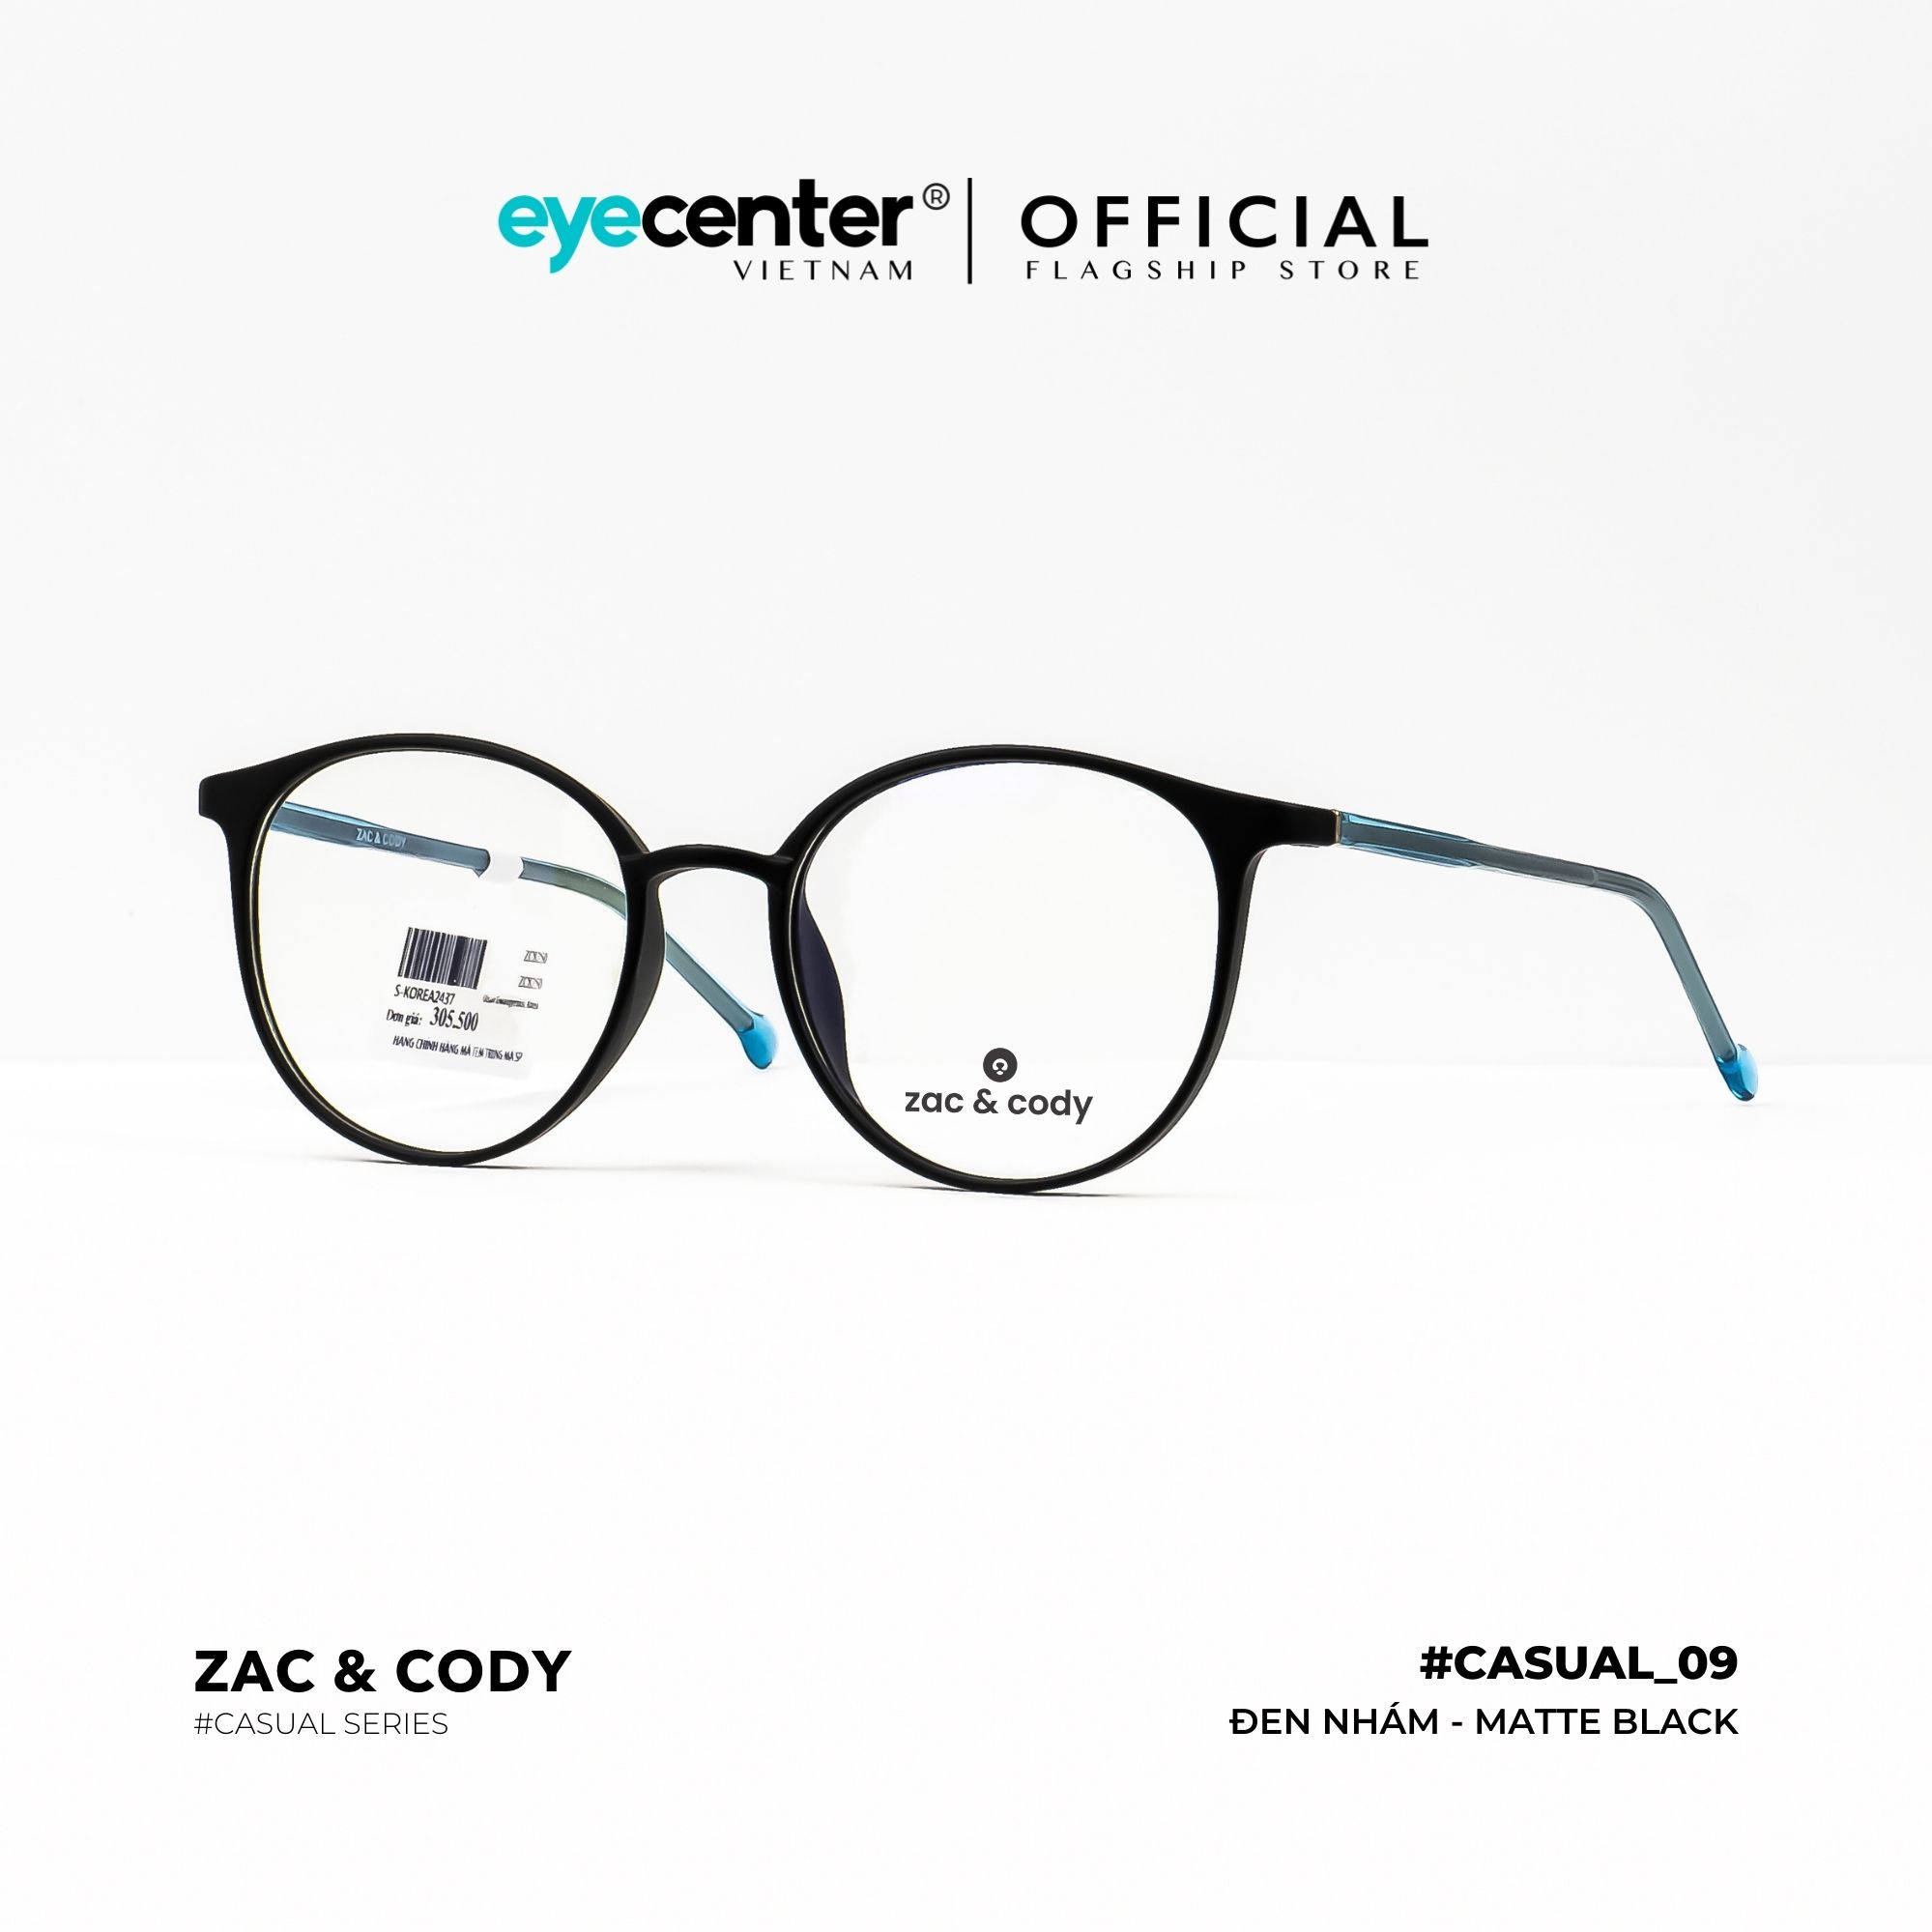 Gọng kính cận nam nữ chính hãng C09-S by Zac Cody nhập khẩu Eye Center Vietnam